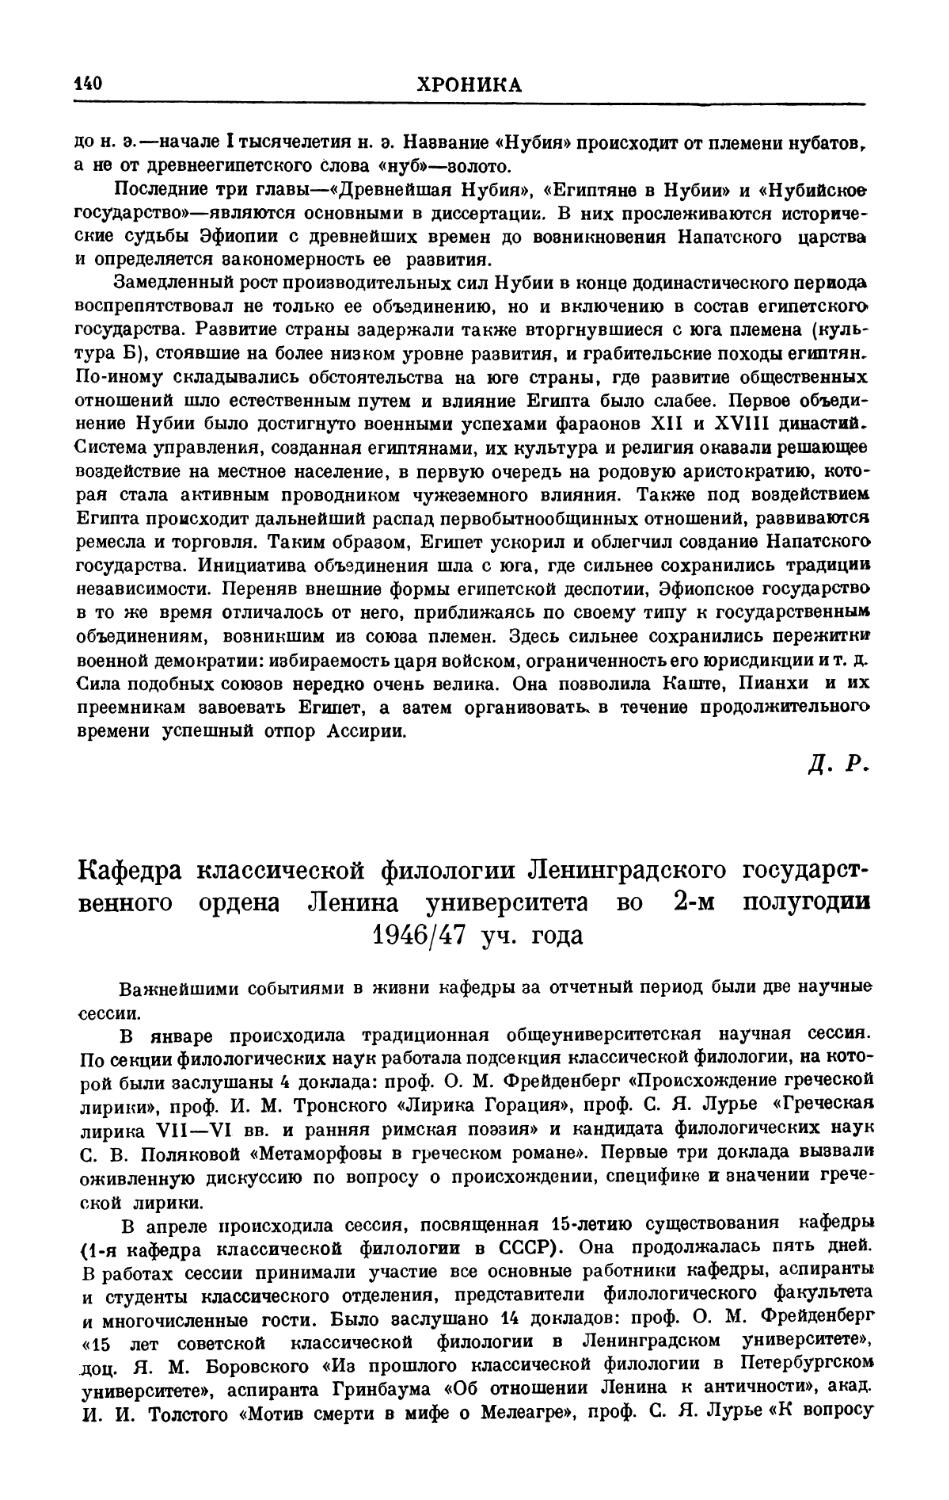 B. И. Надель — Кафедра классической филологии ЛГУ во втором полугодии 1946/47 года